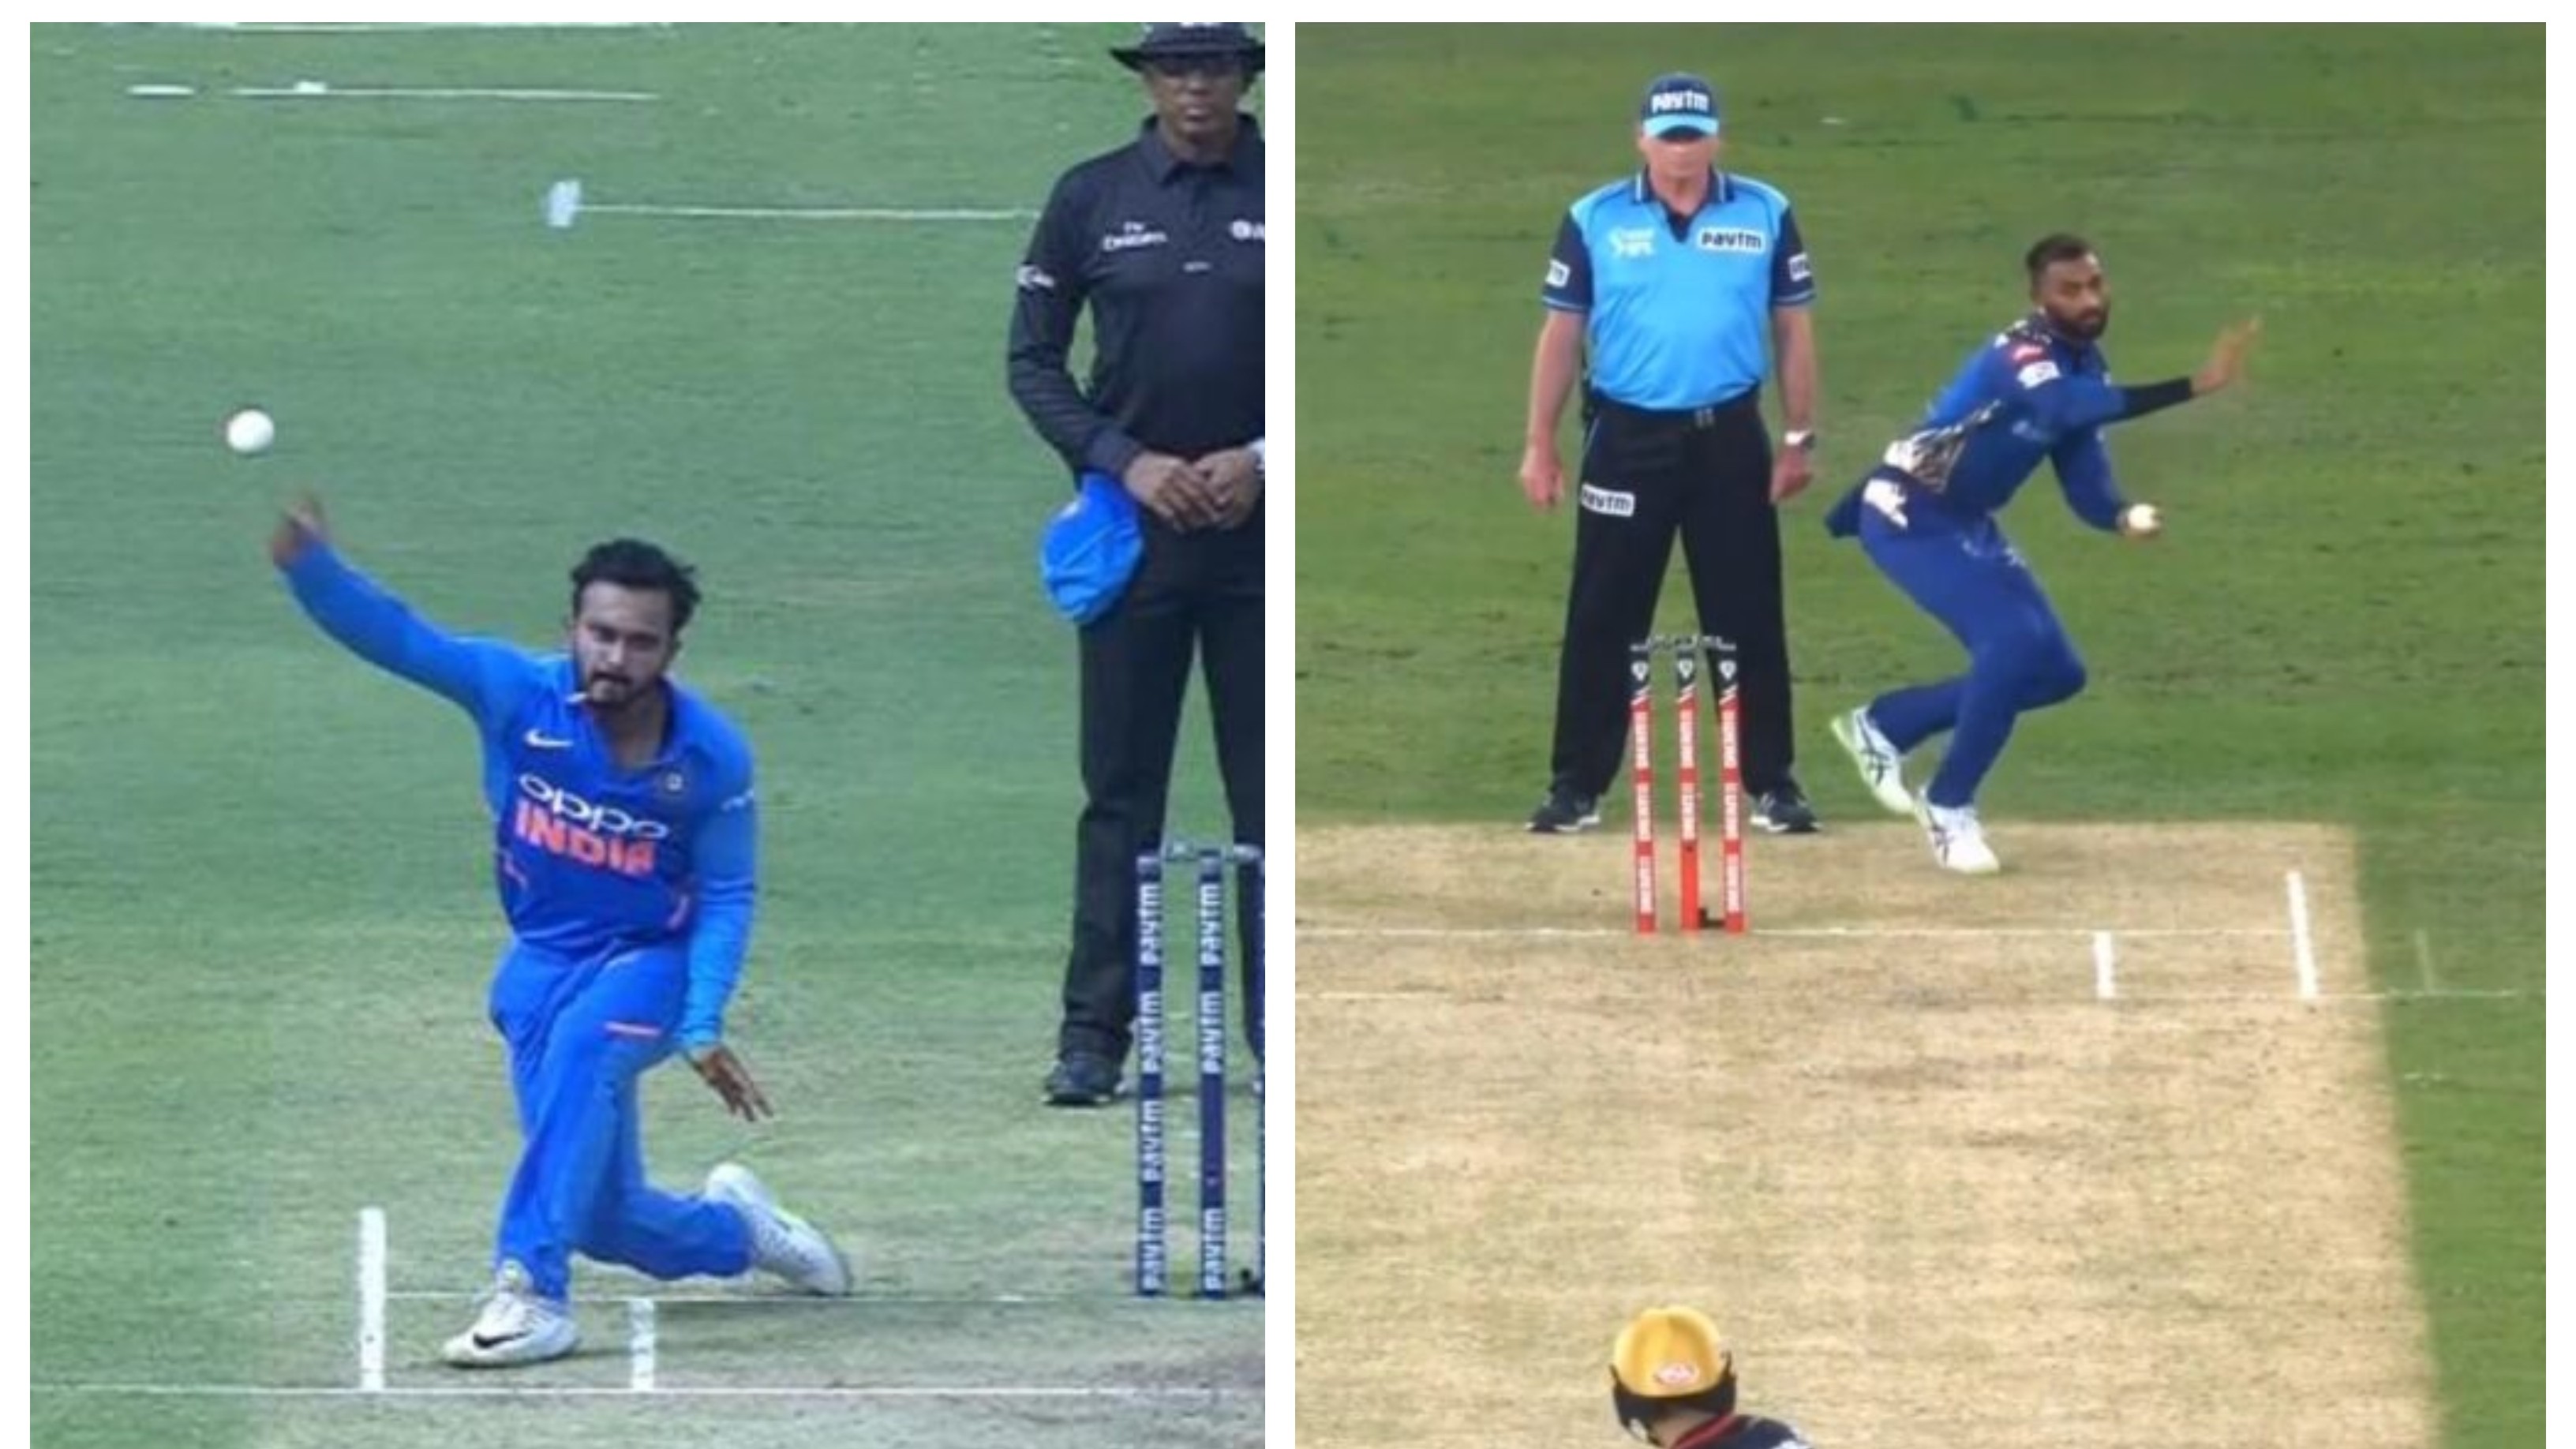 IPL 2020: WATCH – MI’s Krunal Pandya imitates Kedar Jadhav’s bowling action against RCB